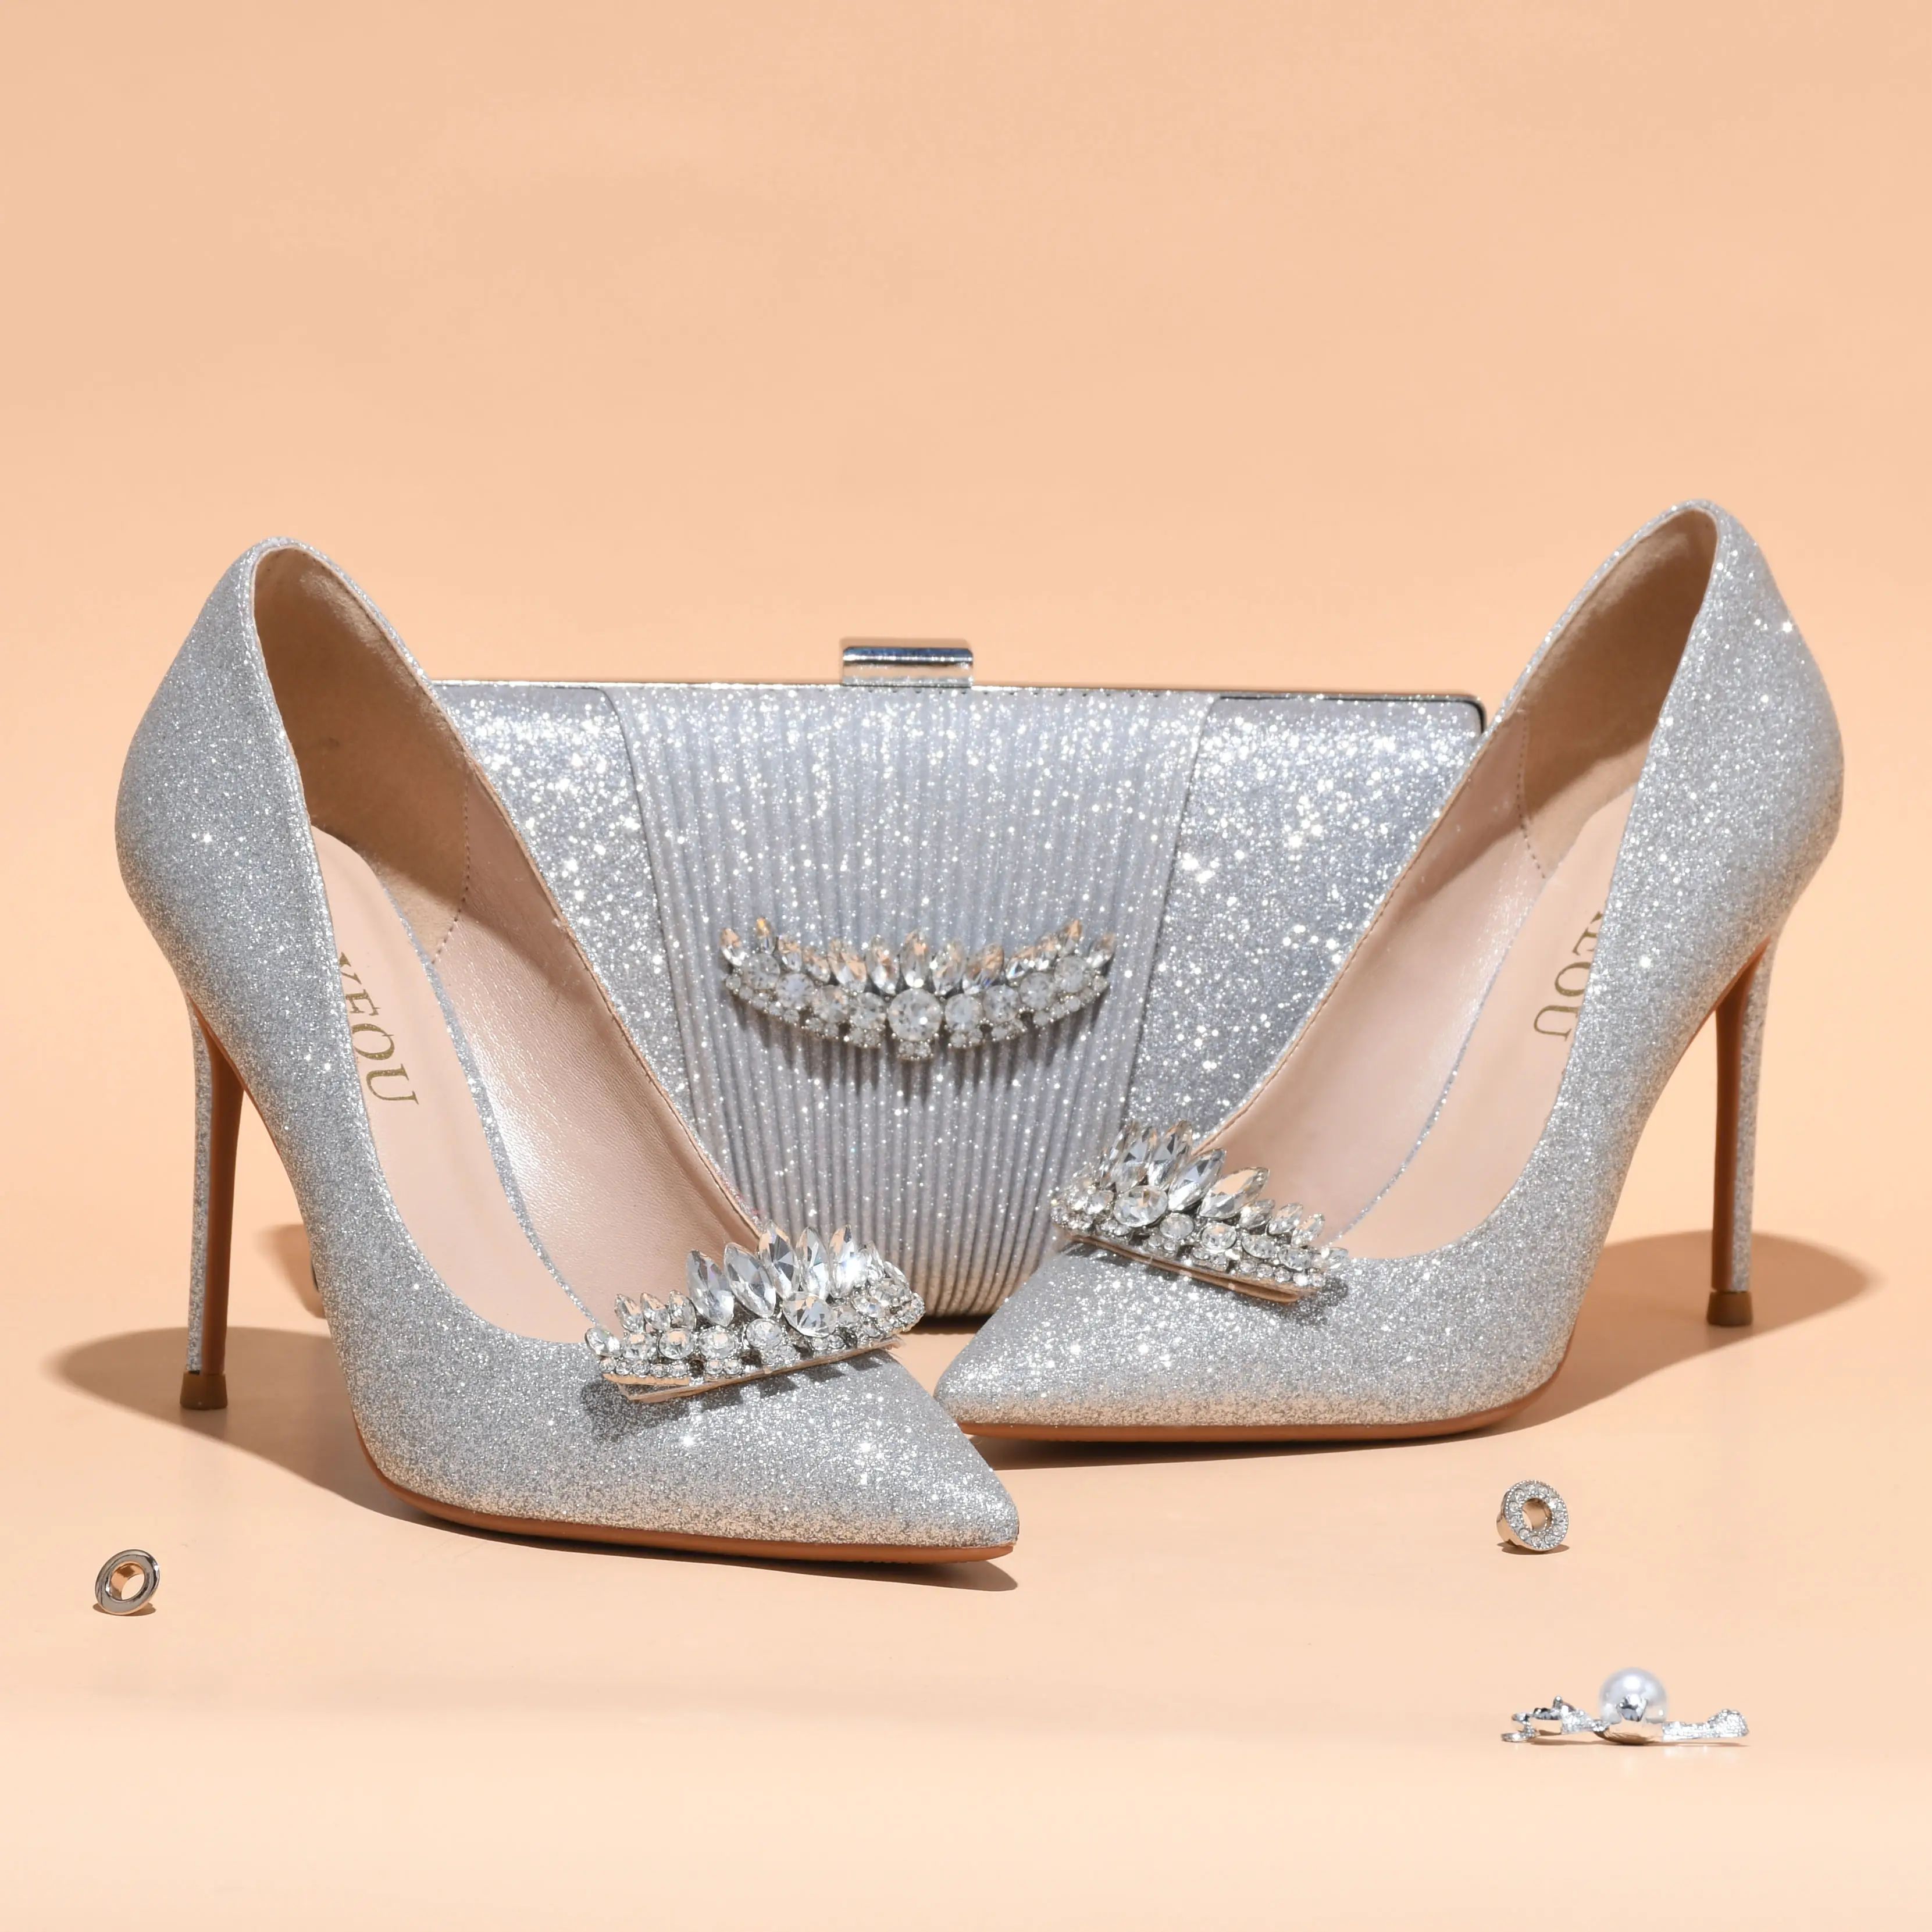 Venta al por mayor plata zapatos para la online los mejores plata zapatos para la boda de China plata zapatos para la boda a mayoristas | Alibaba.com